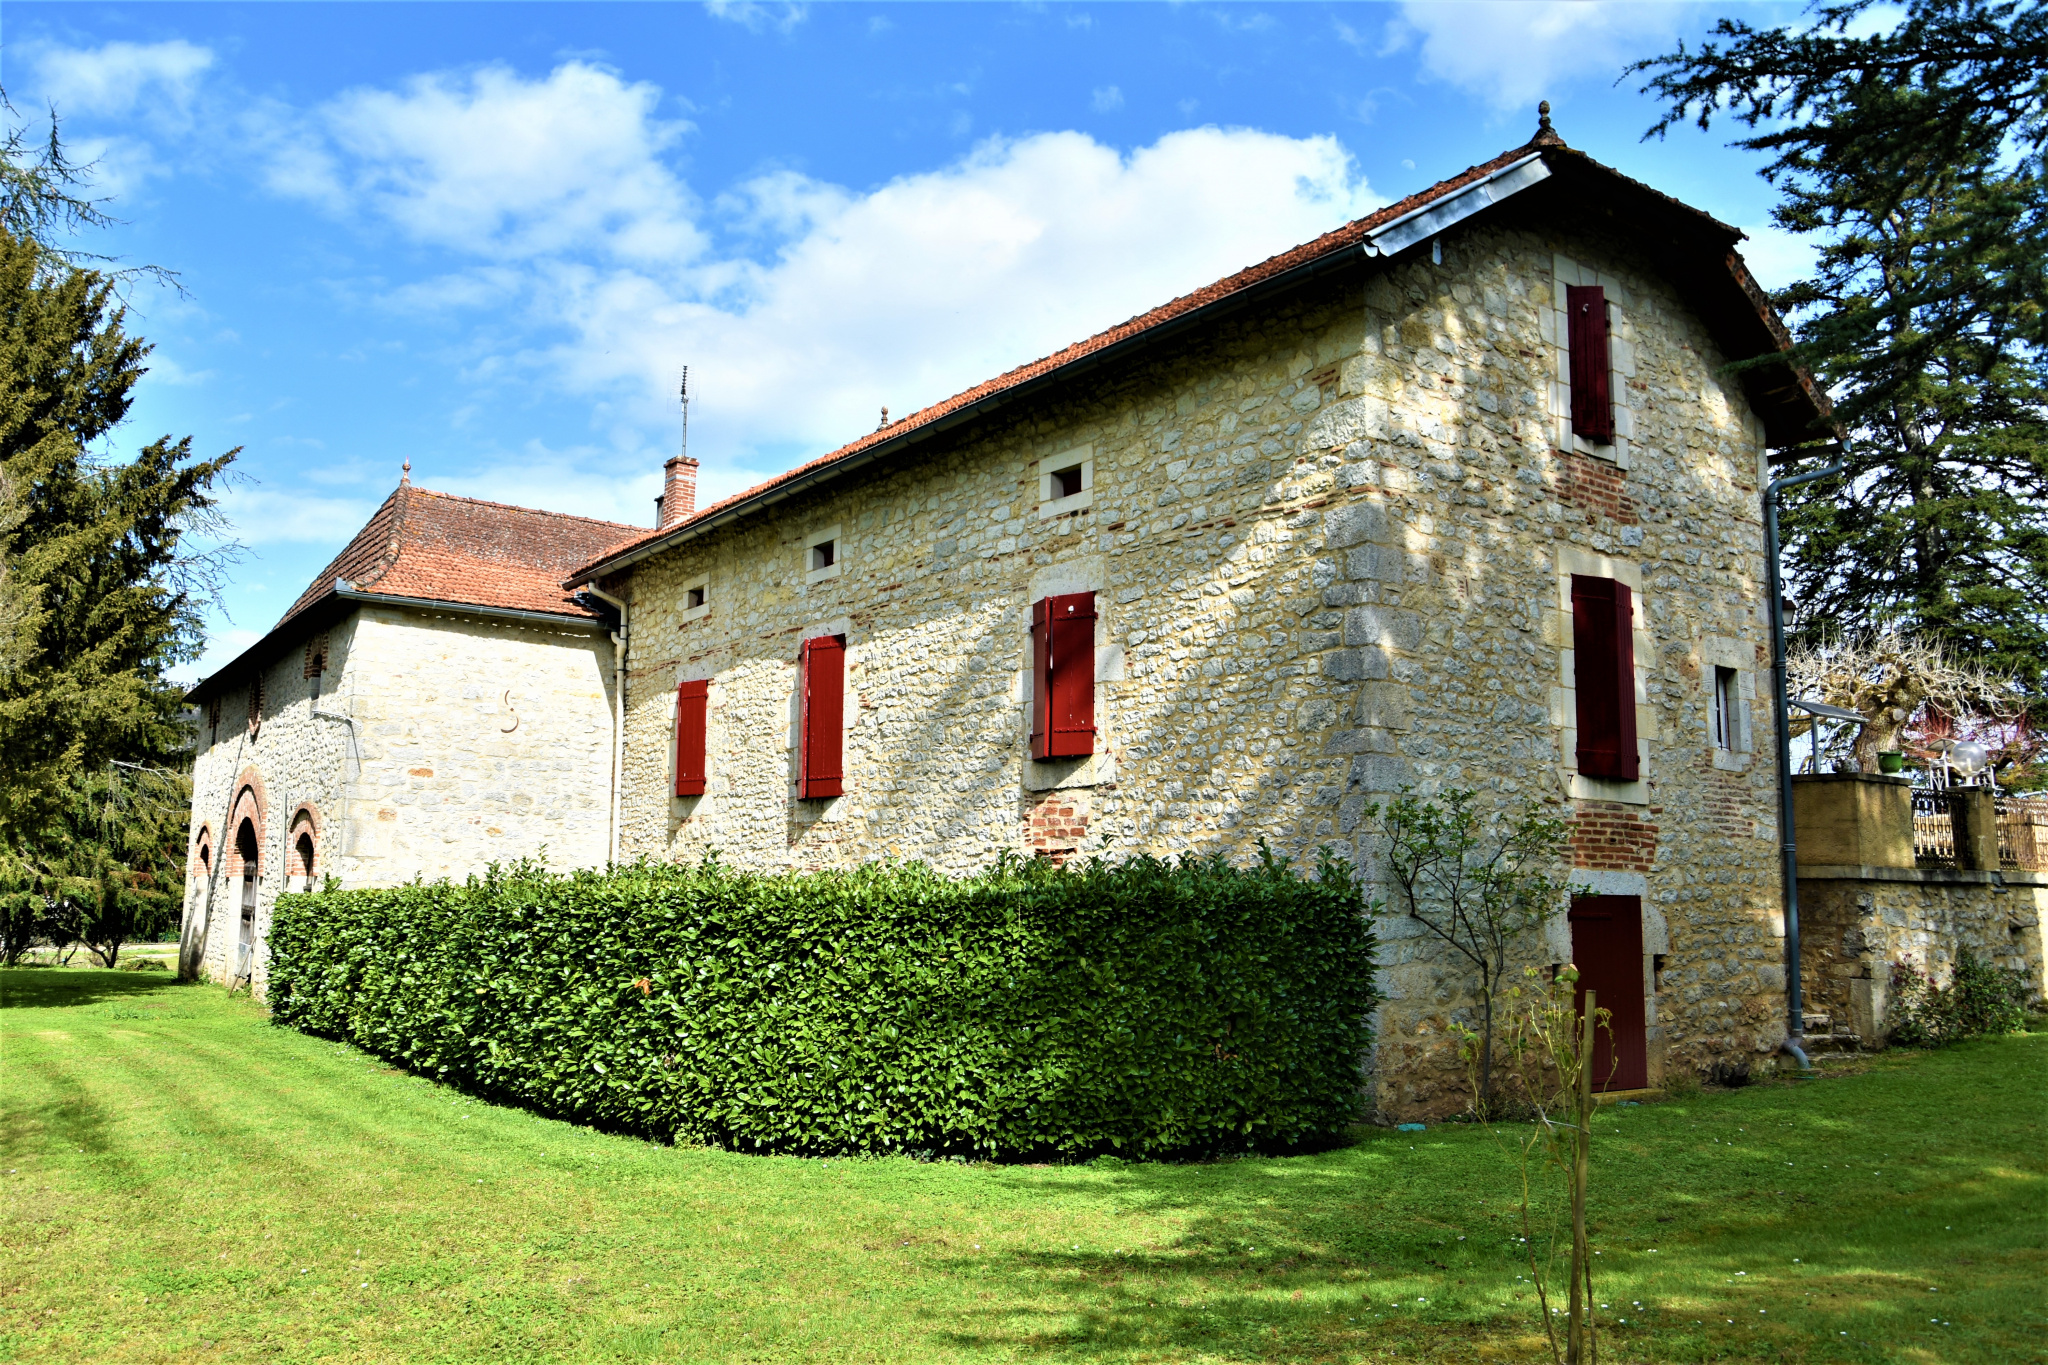 Très belle maison en pierre et son jardin à la Française.